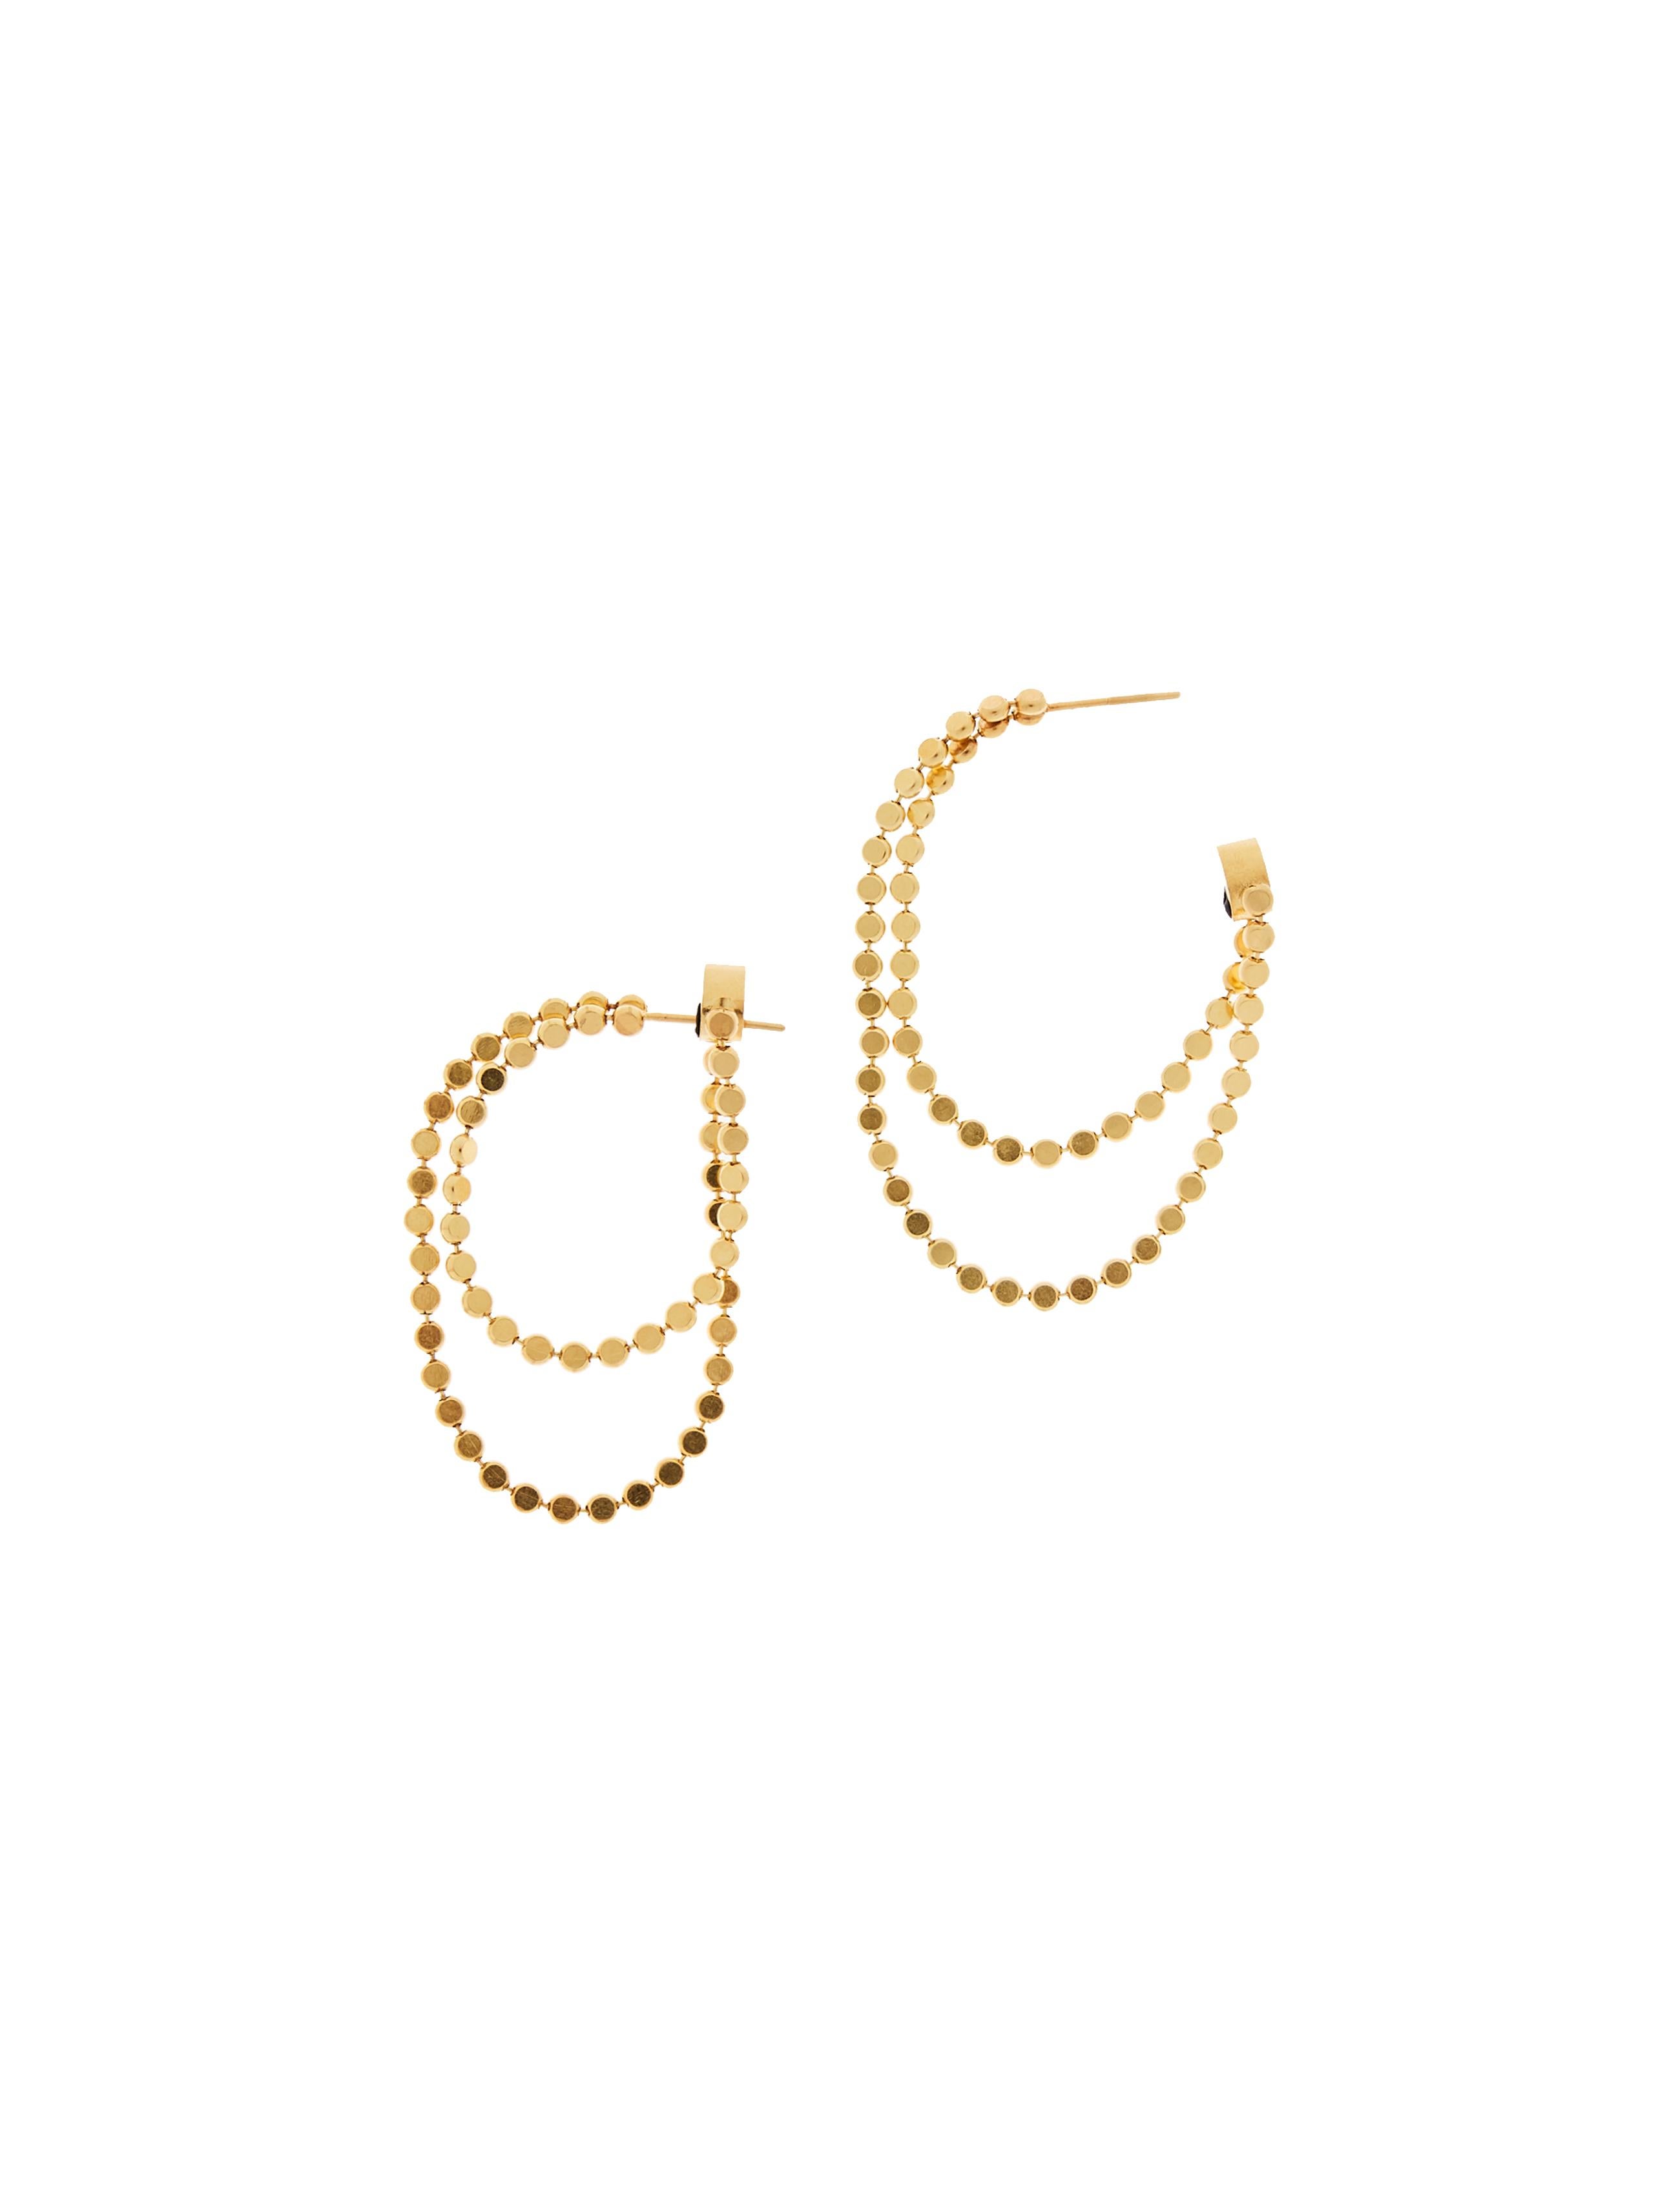 Earrings Hoops Double Round Motif Chain 18k Gold-Plated Silver Greek Earrings For Sale 2